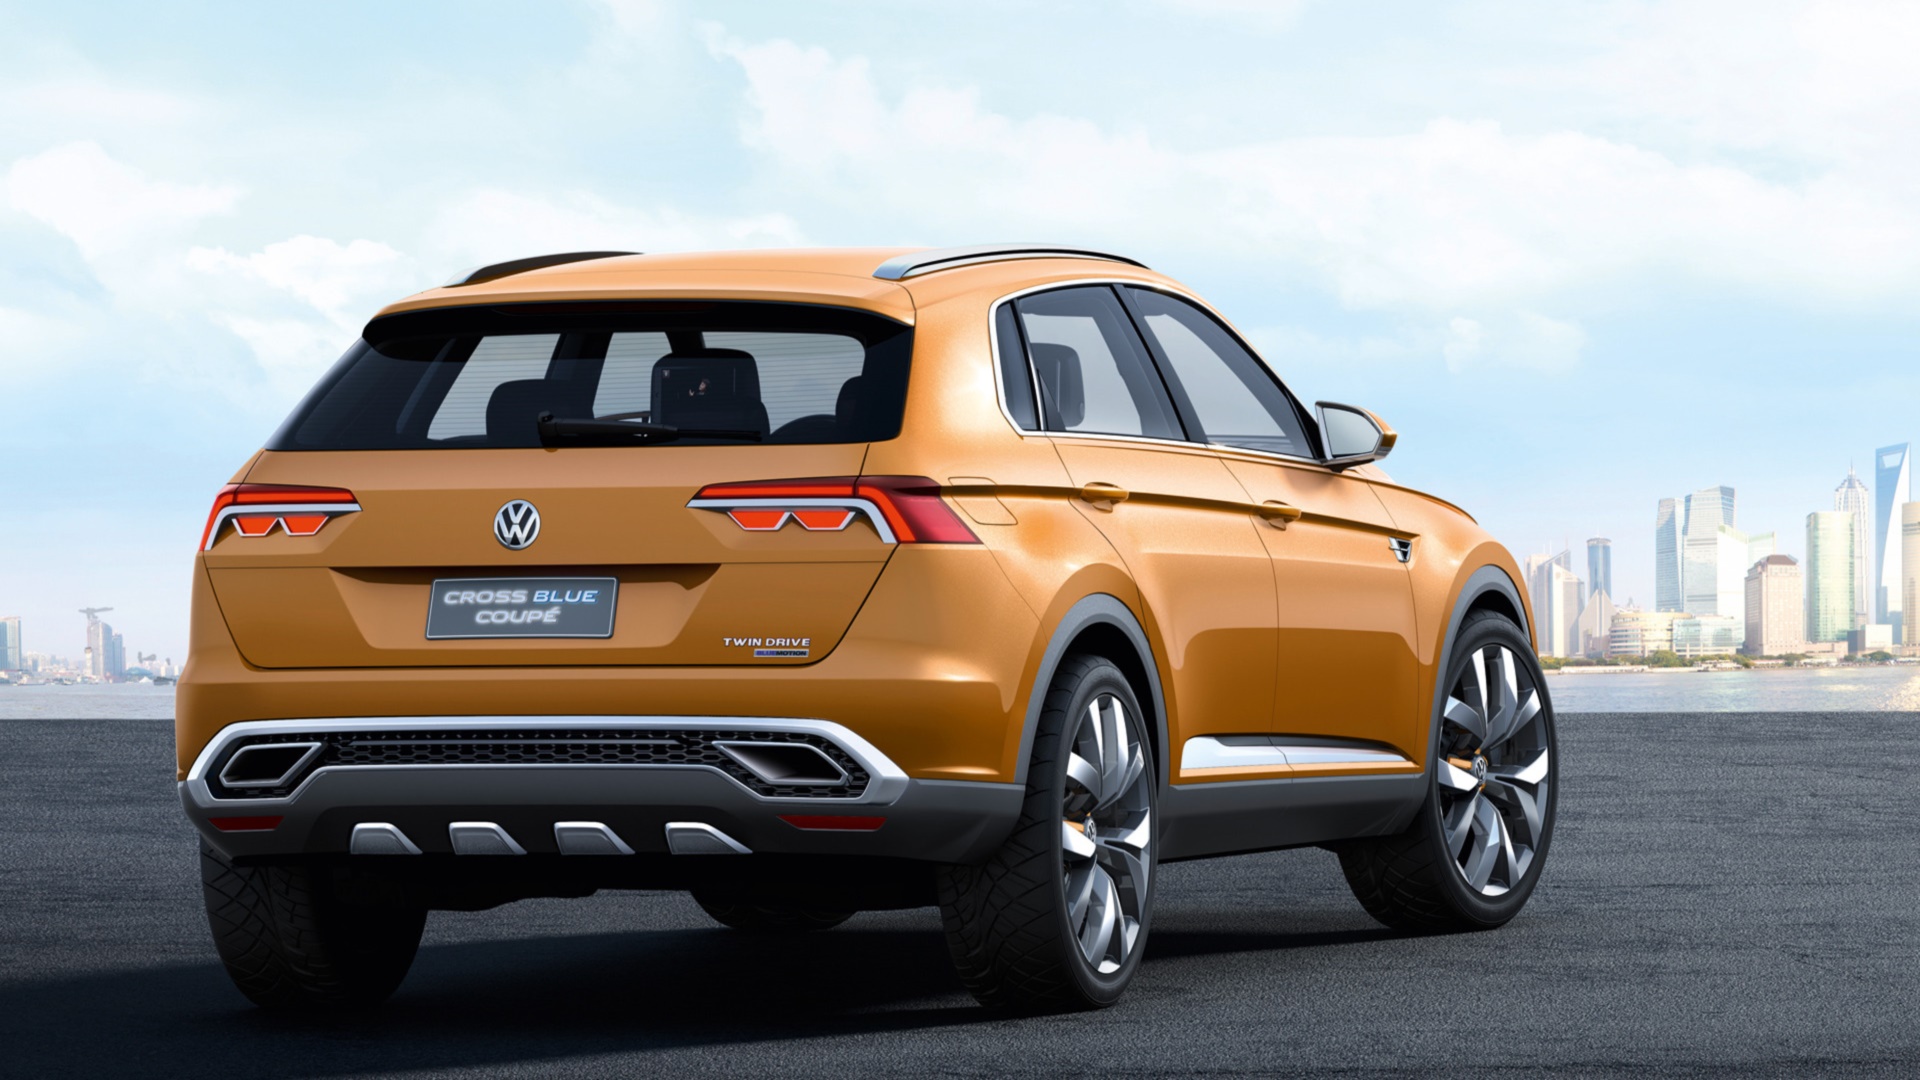 Télécharger des fonds d'écran Volkswagen Crossbleu HD